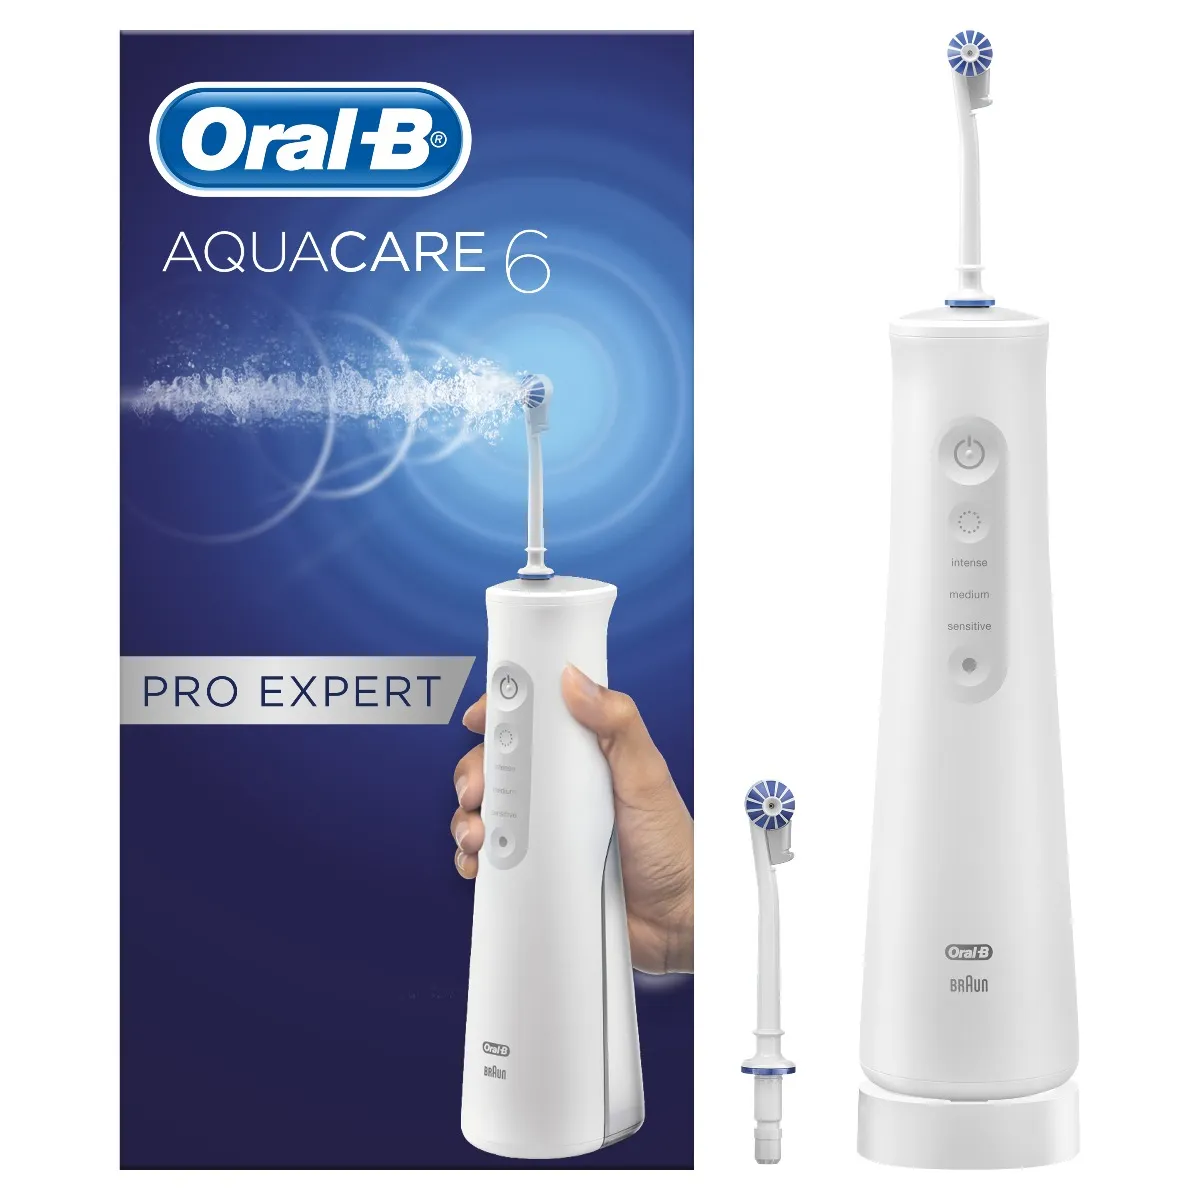 Oral-B Aquacare 6